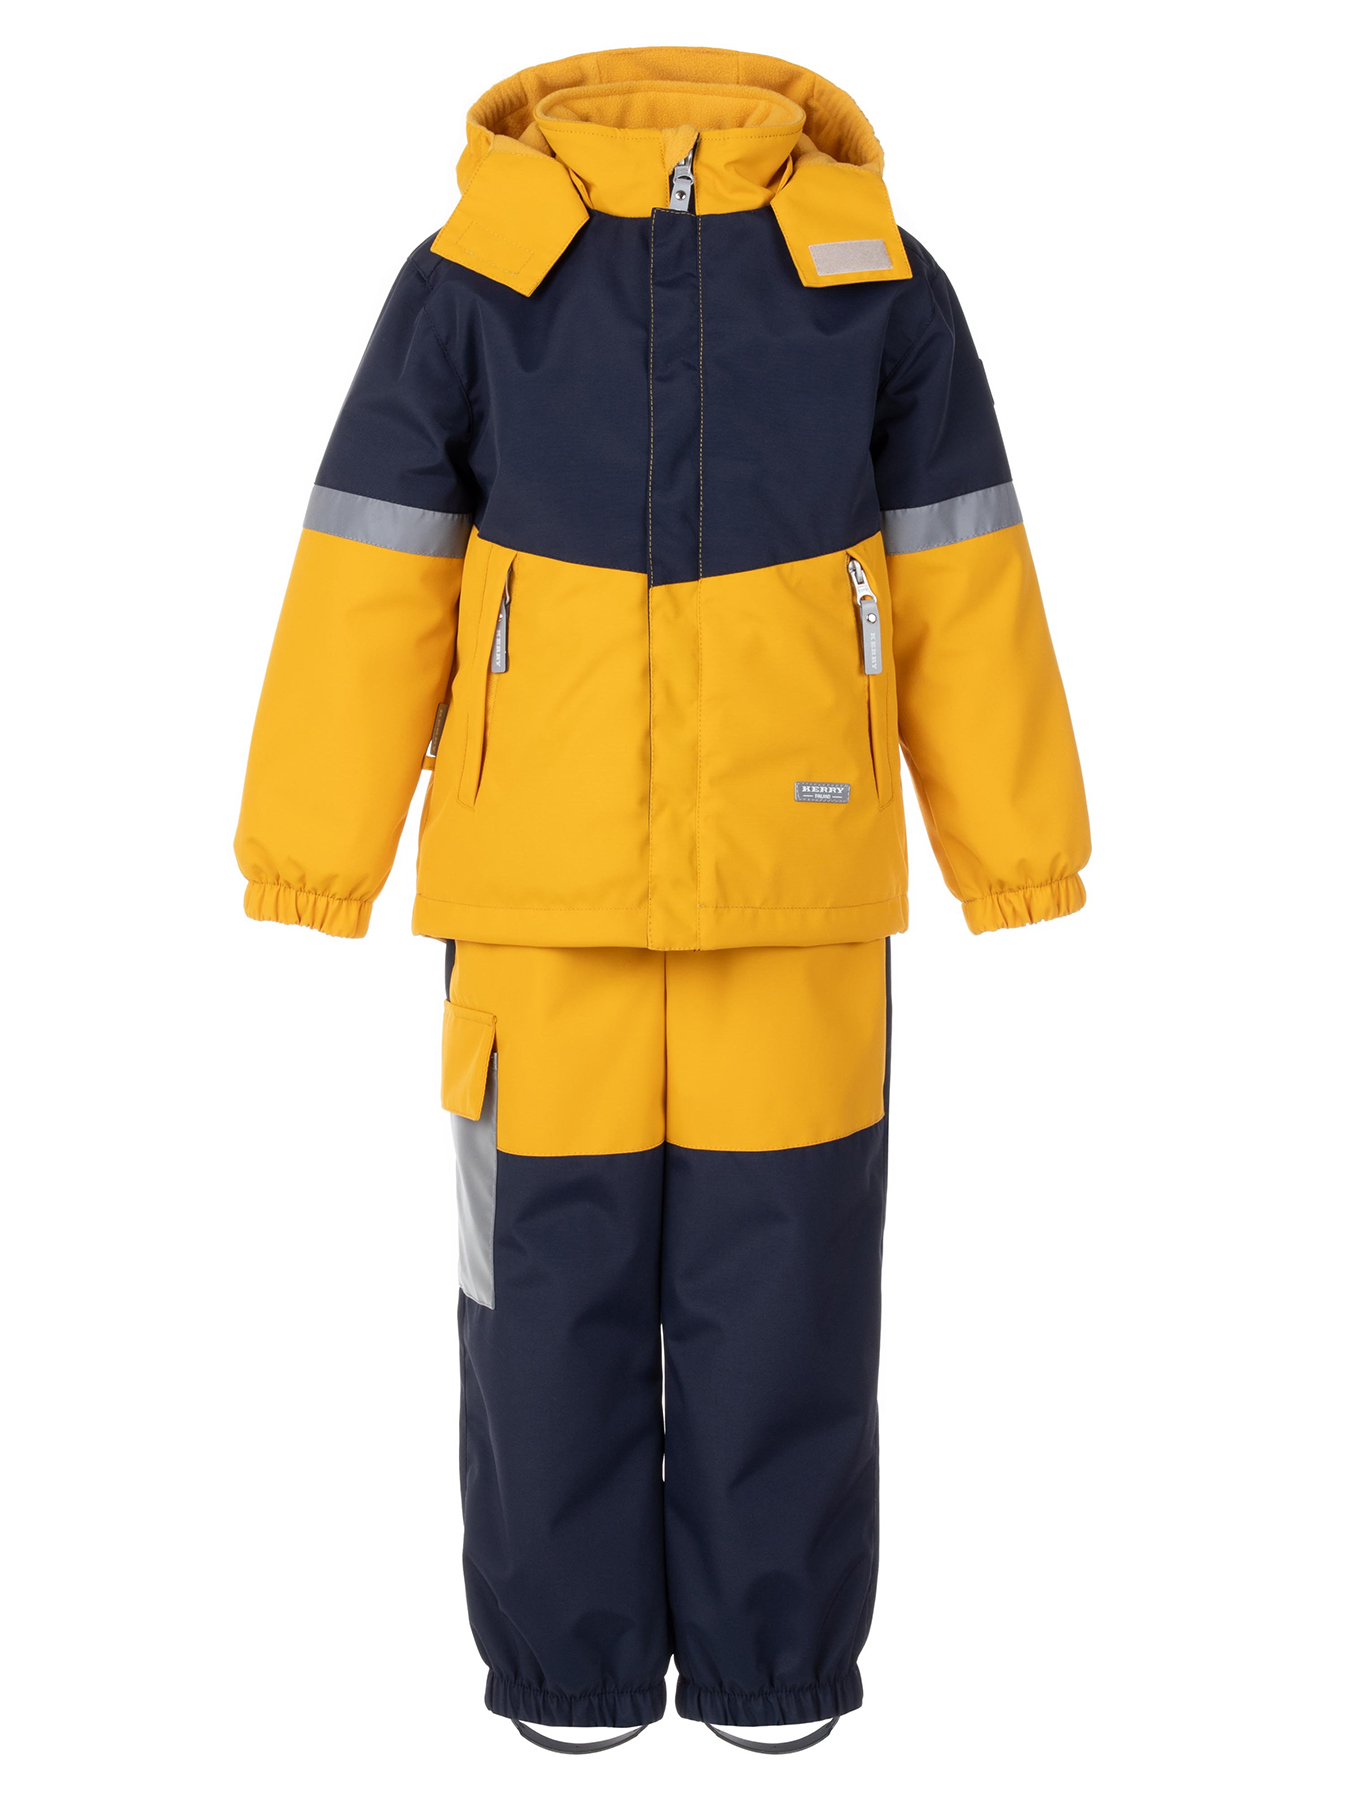 Комплект верхней одежды KERRY DRAKE K24036, 111-желтый,темно-синий, 116